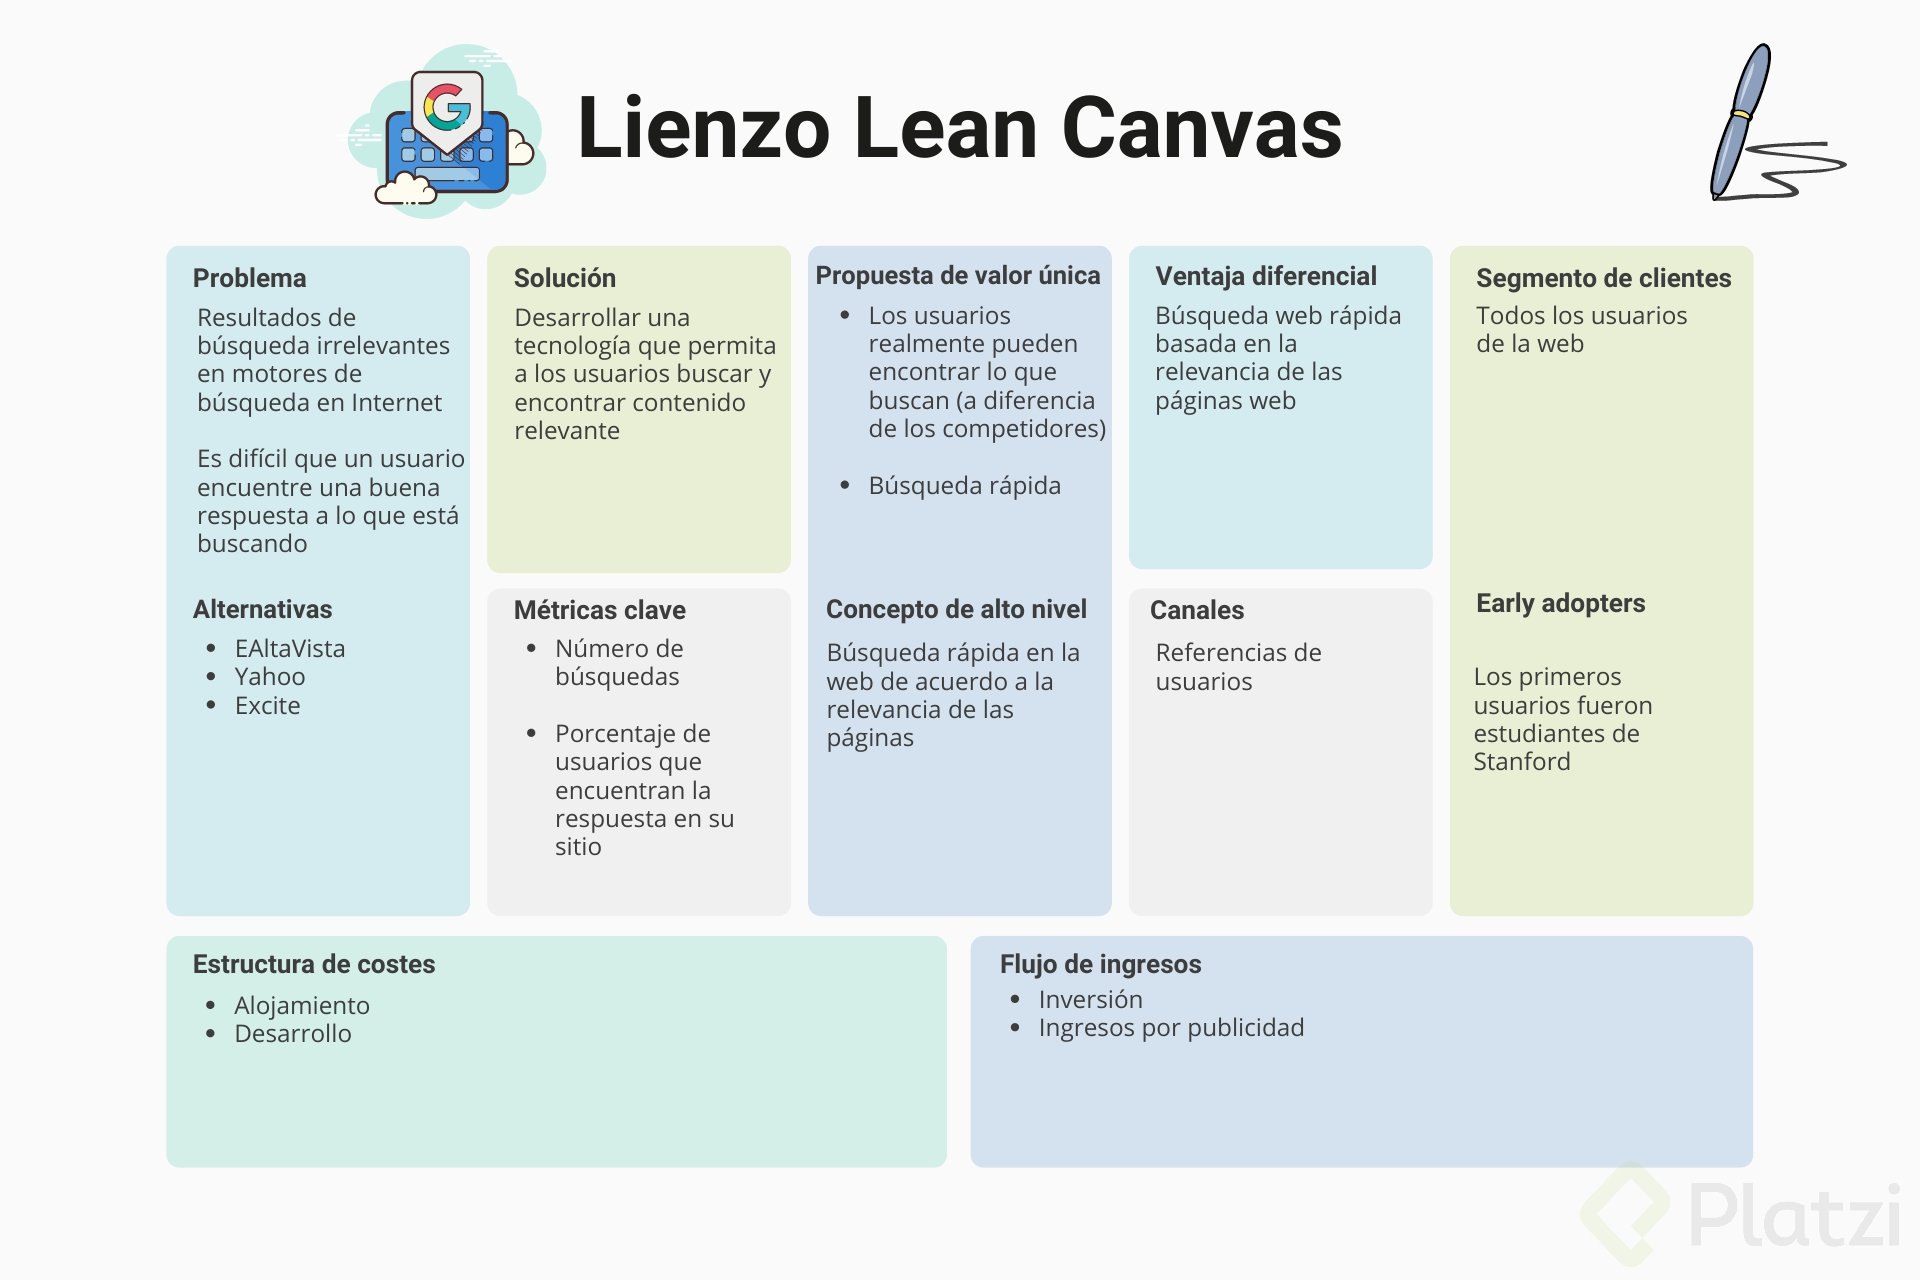 aplica-el-lienzo-lean-canvas-con-3-ejemplos-exitosos